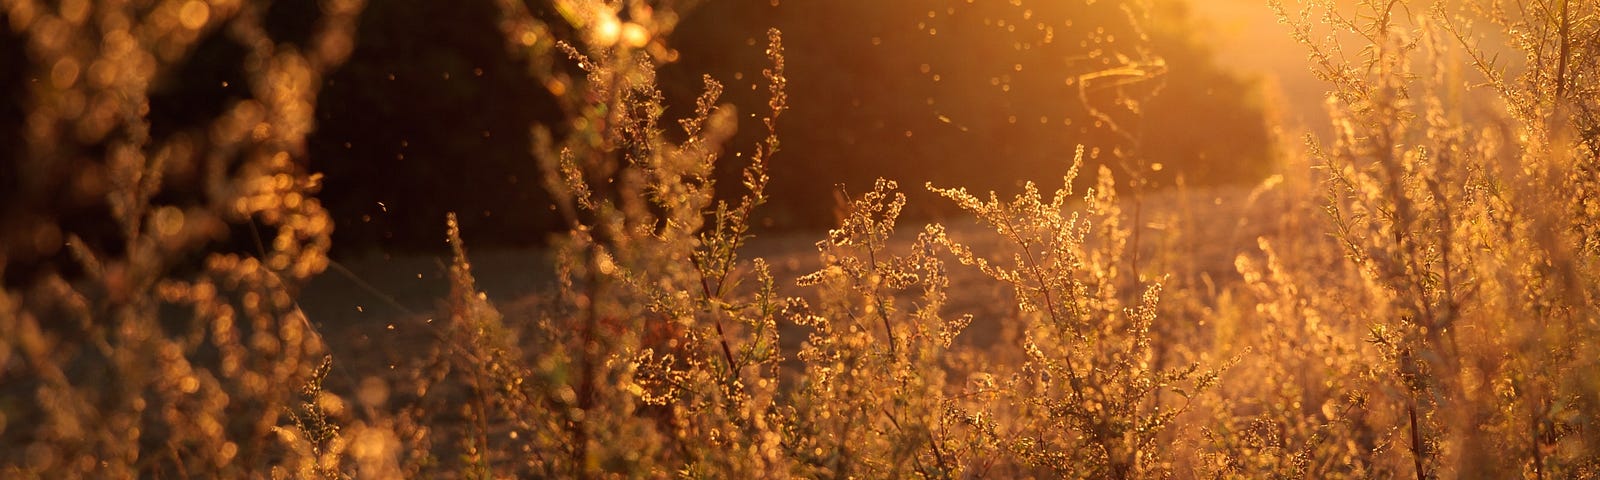 Golden, sunset light filtering through golden grass in a field